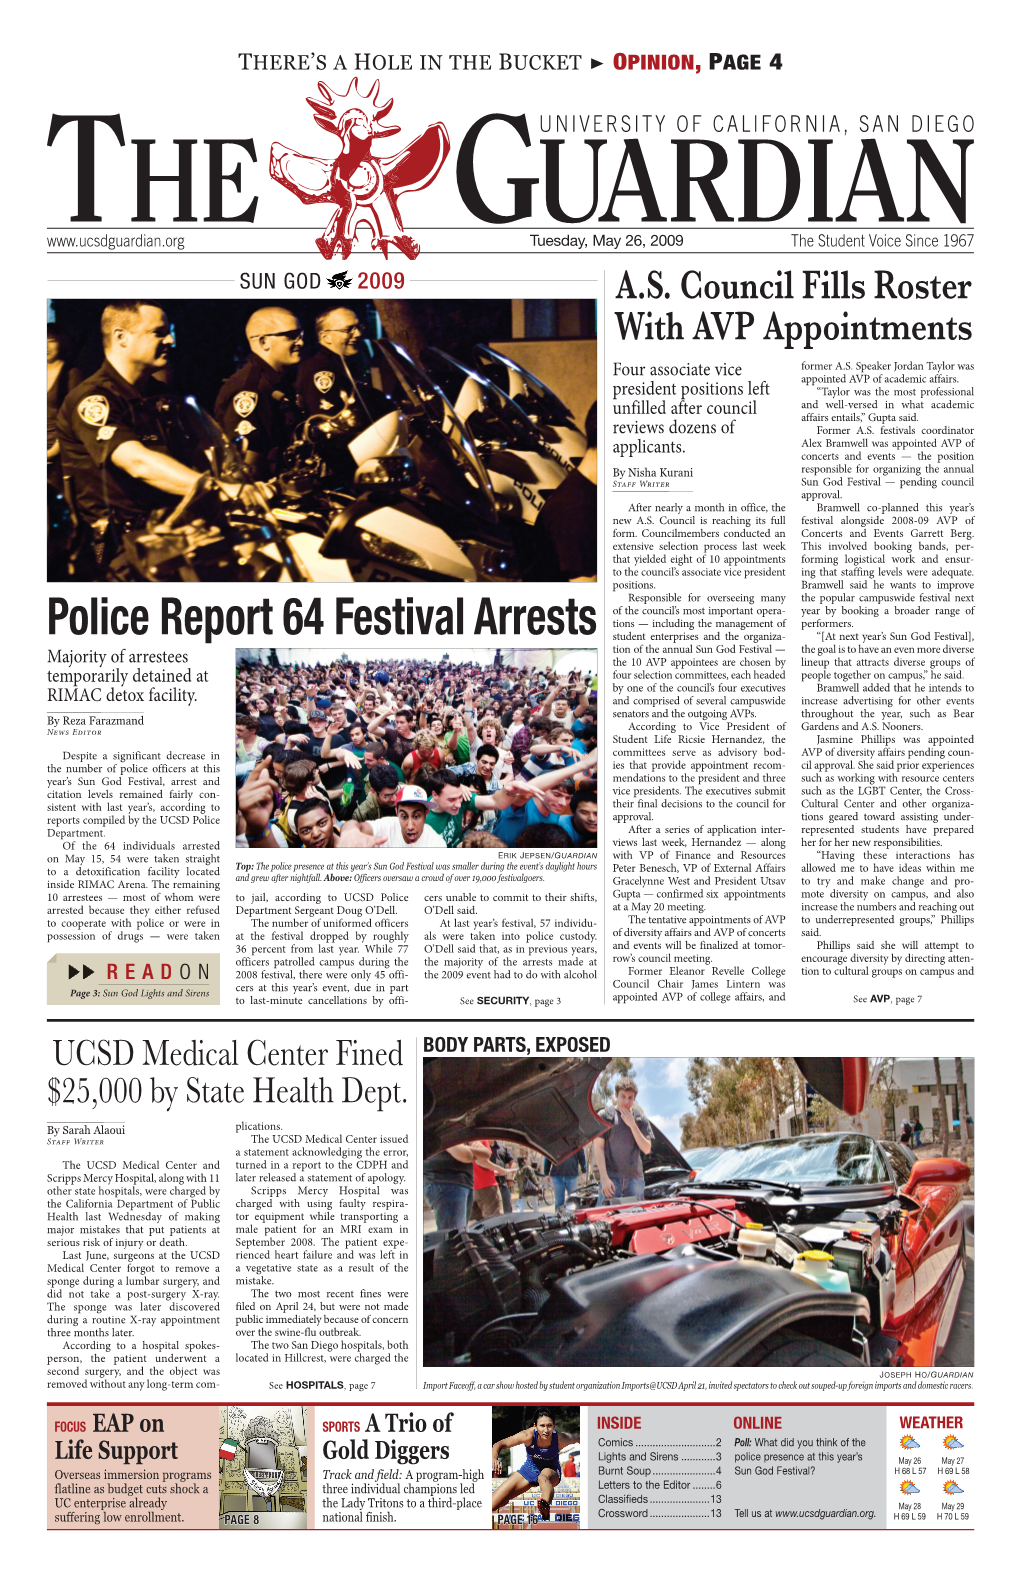 Police Report 64 Festival Arrests